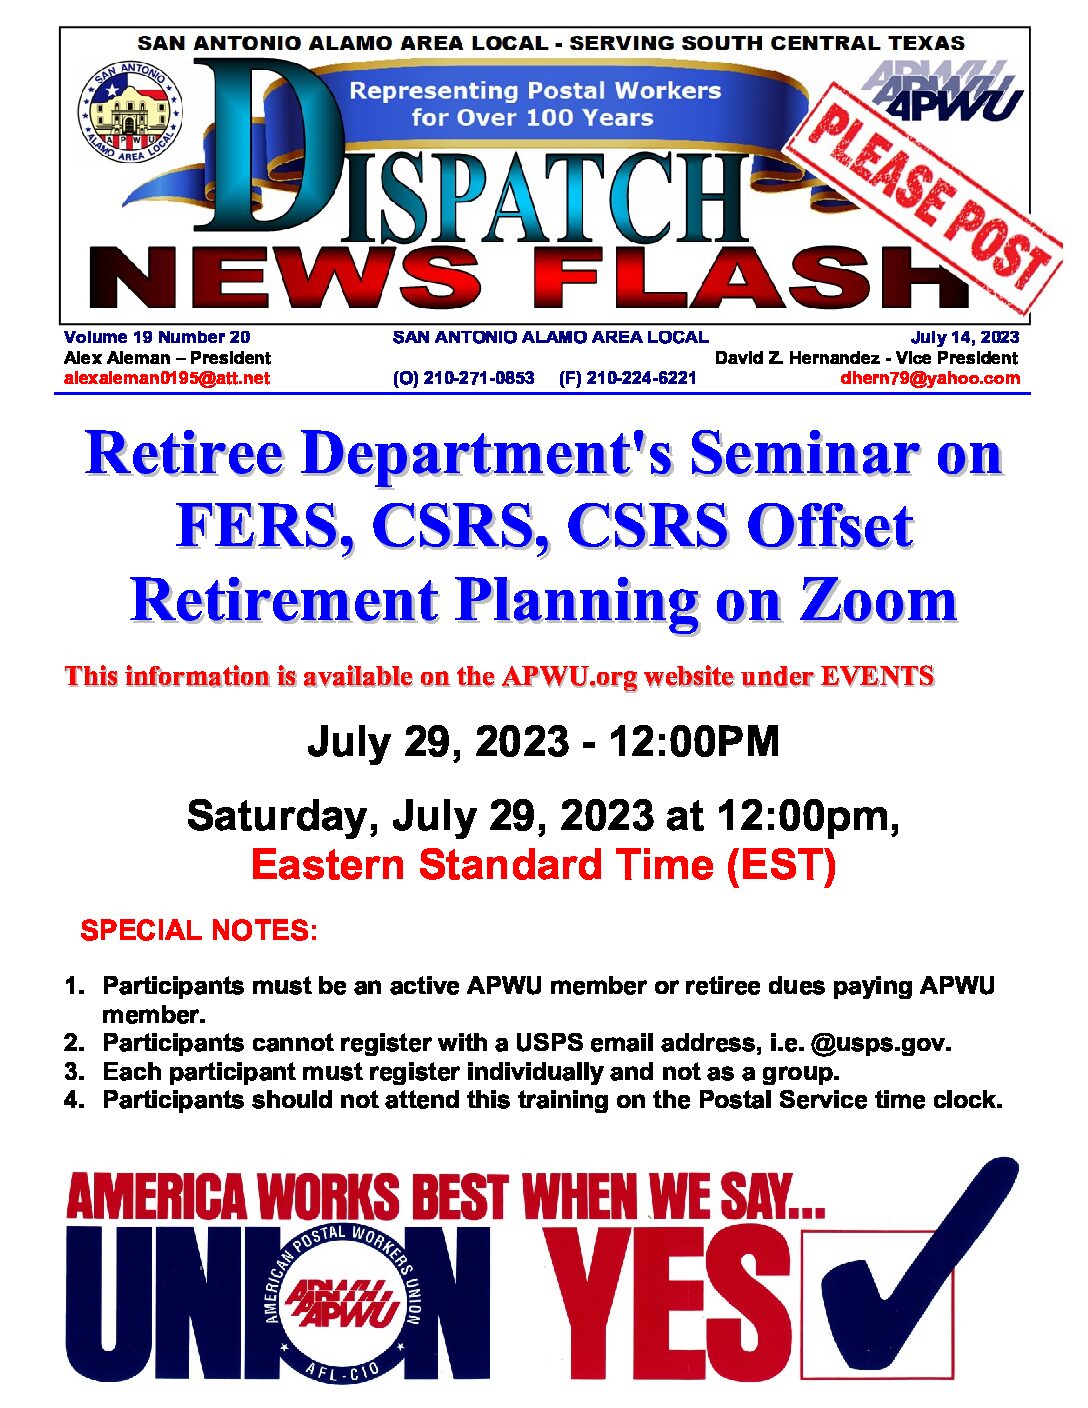 NewsFlash 19-20 APWU Retirement Seminar (Zoom) - 